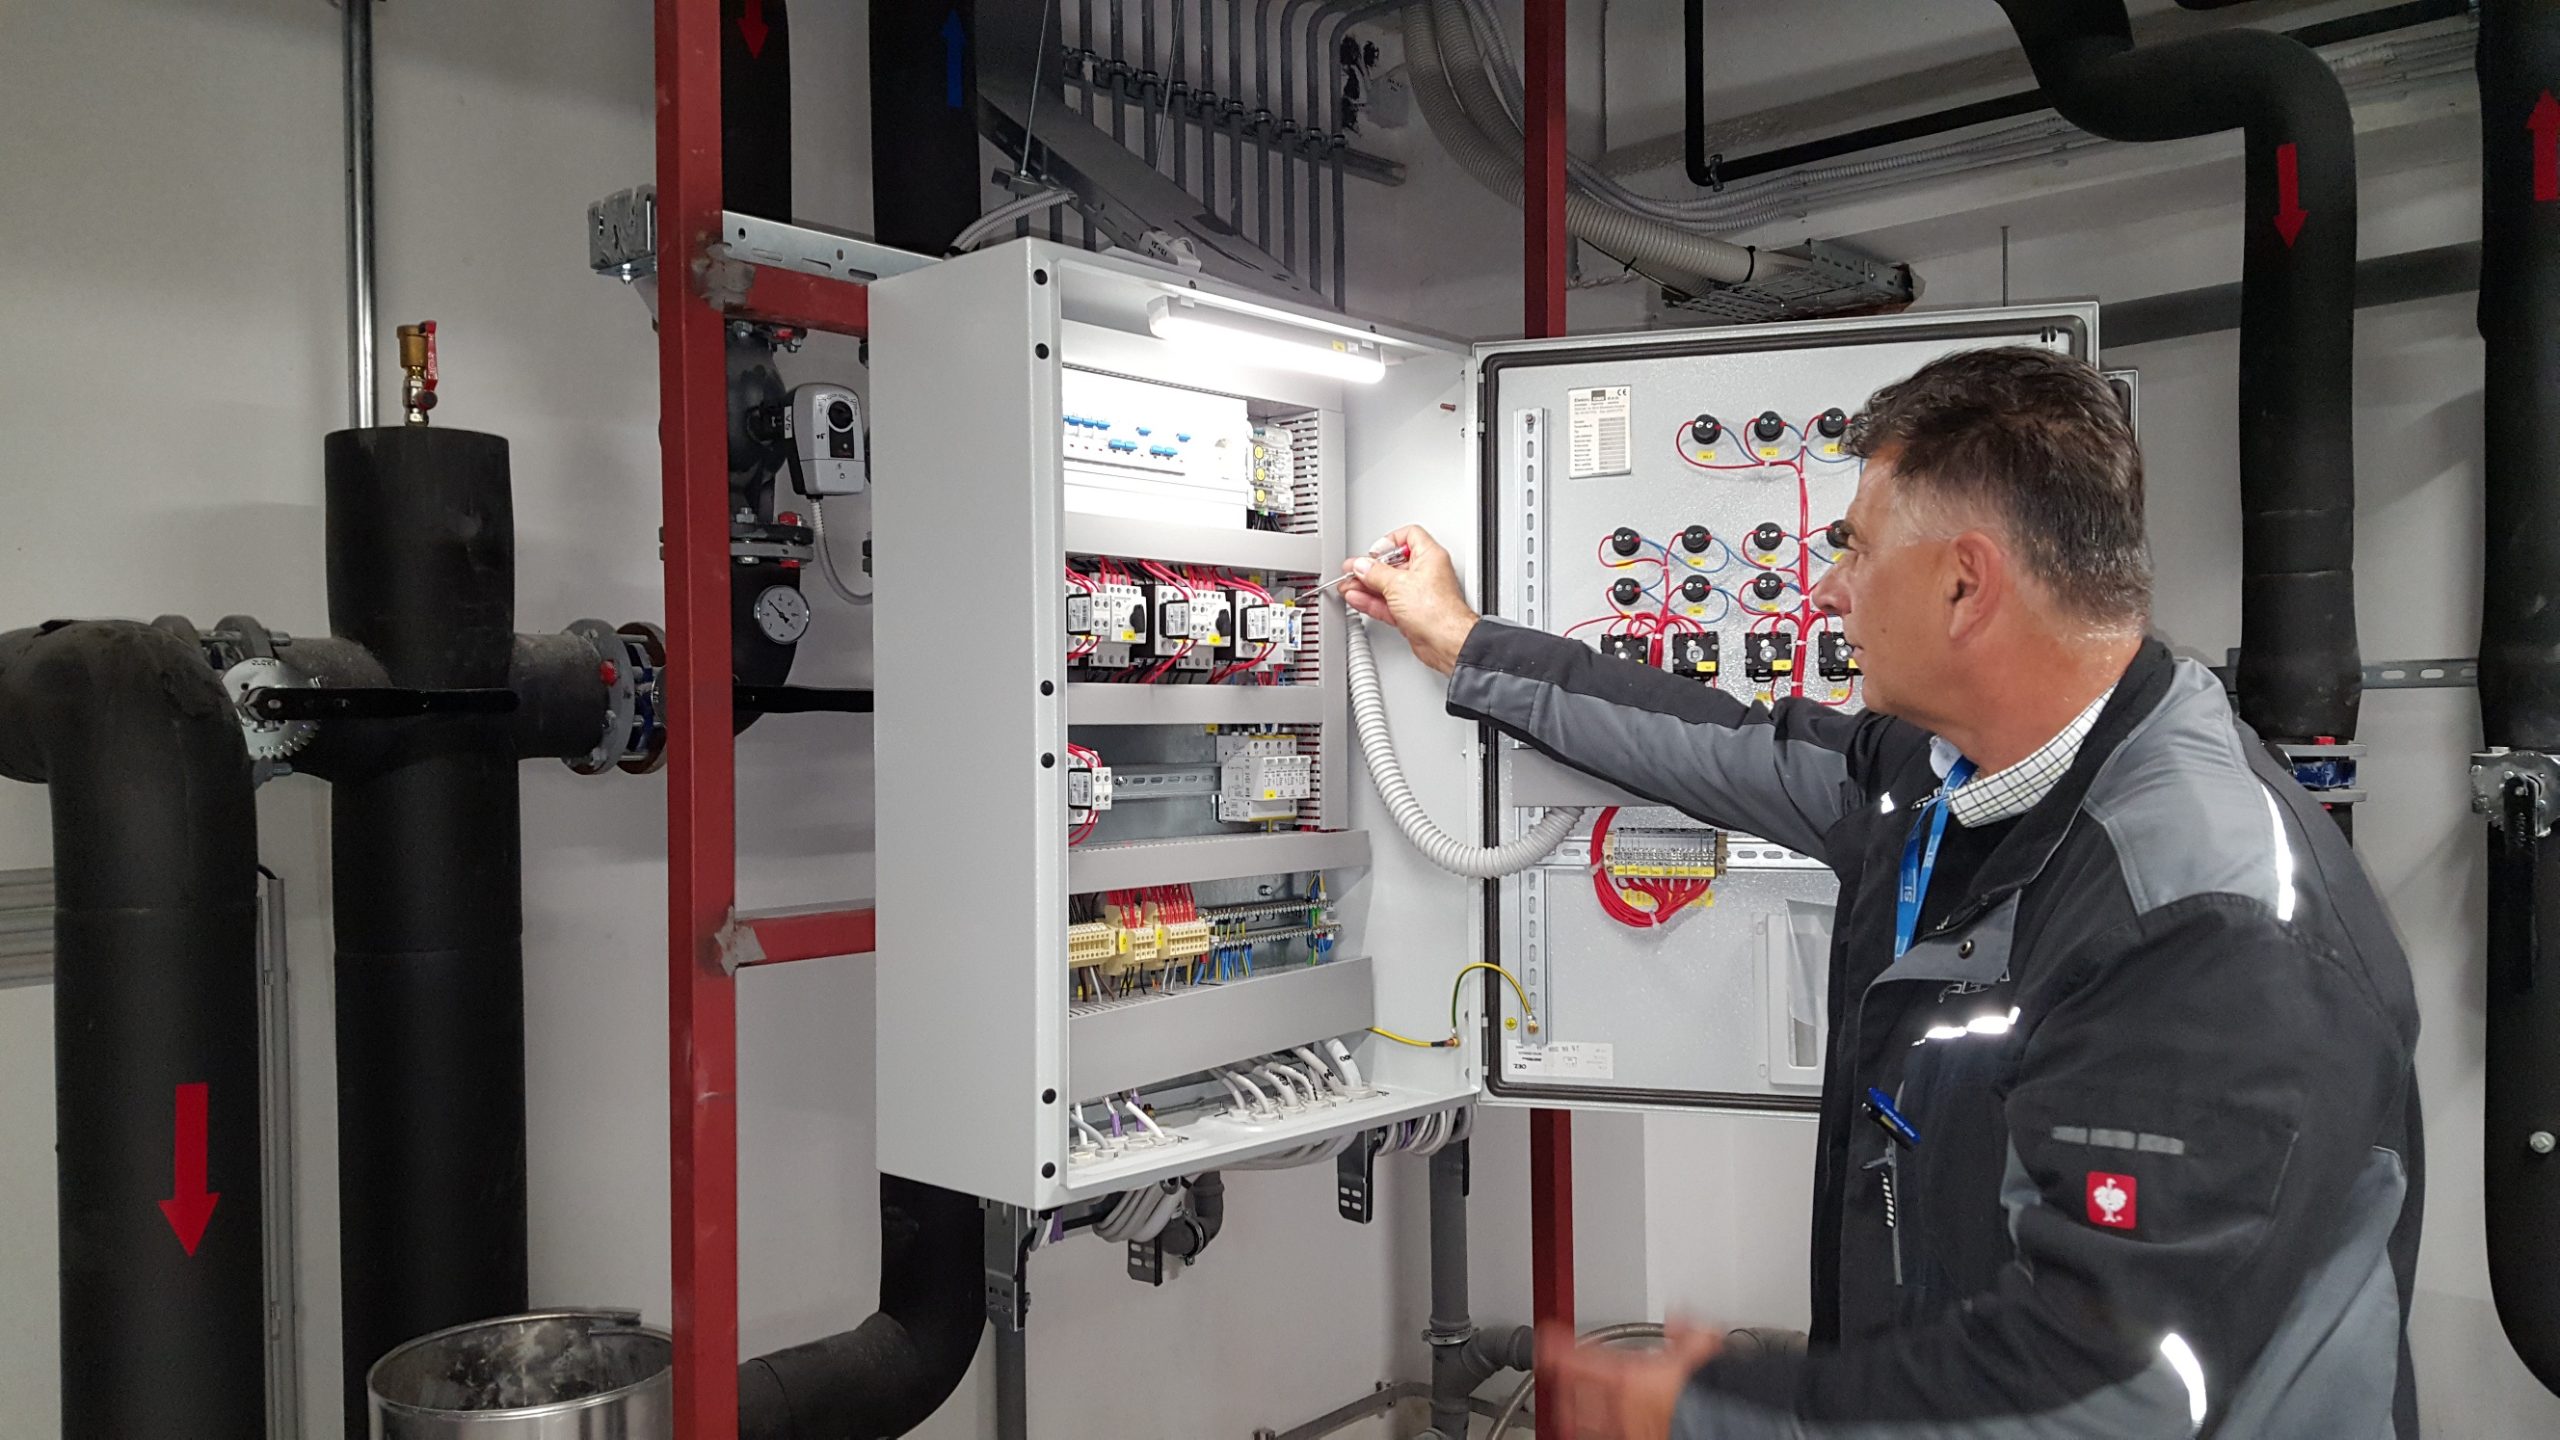 Prikaz kontrole delovanja omare z elektro instalacijami, ki ga izvaja zaposleni iz oddelka tehnični servis.